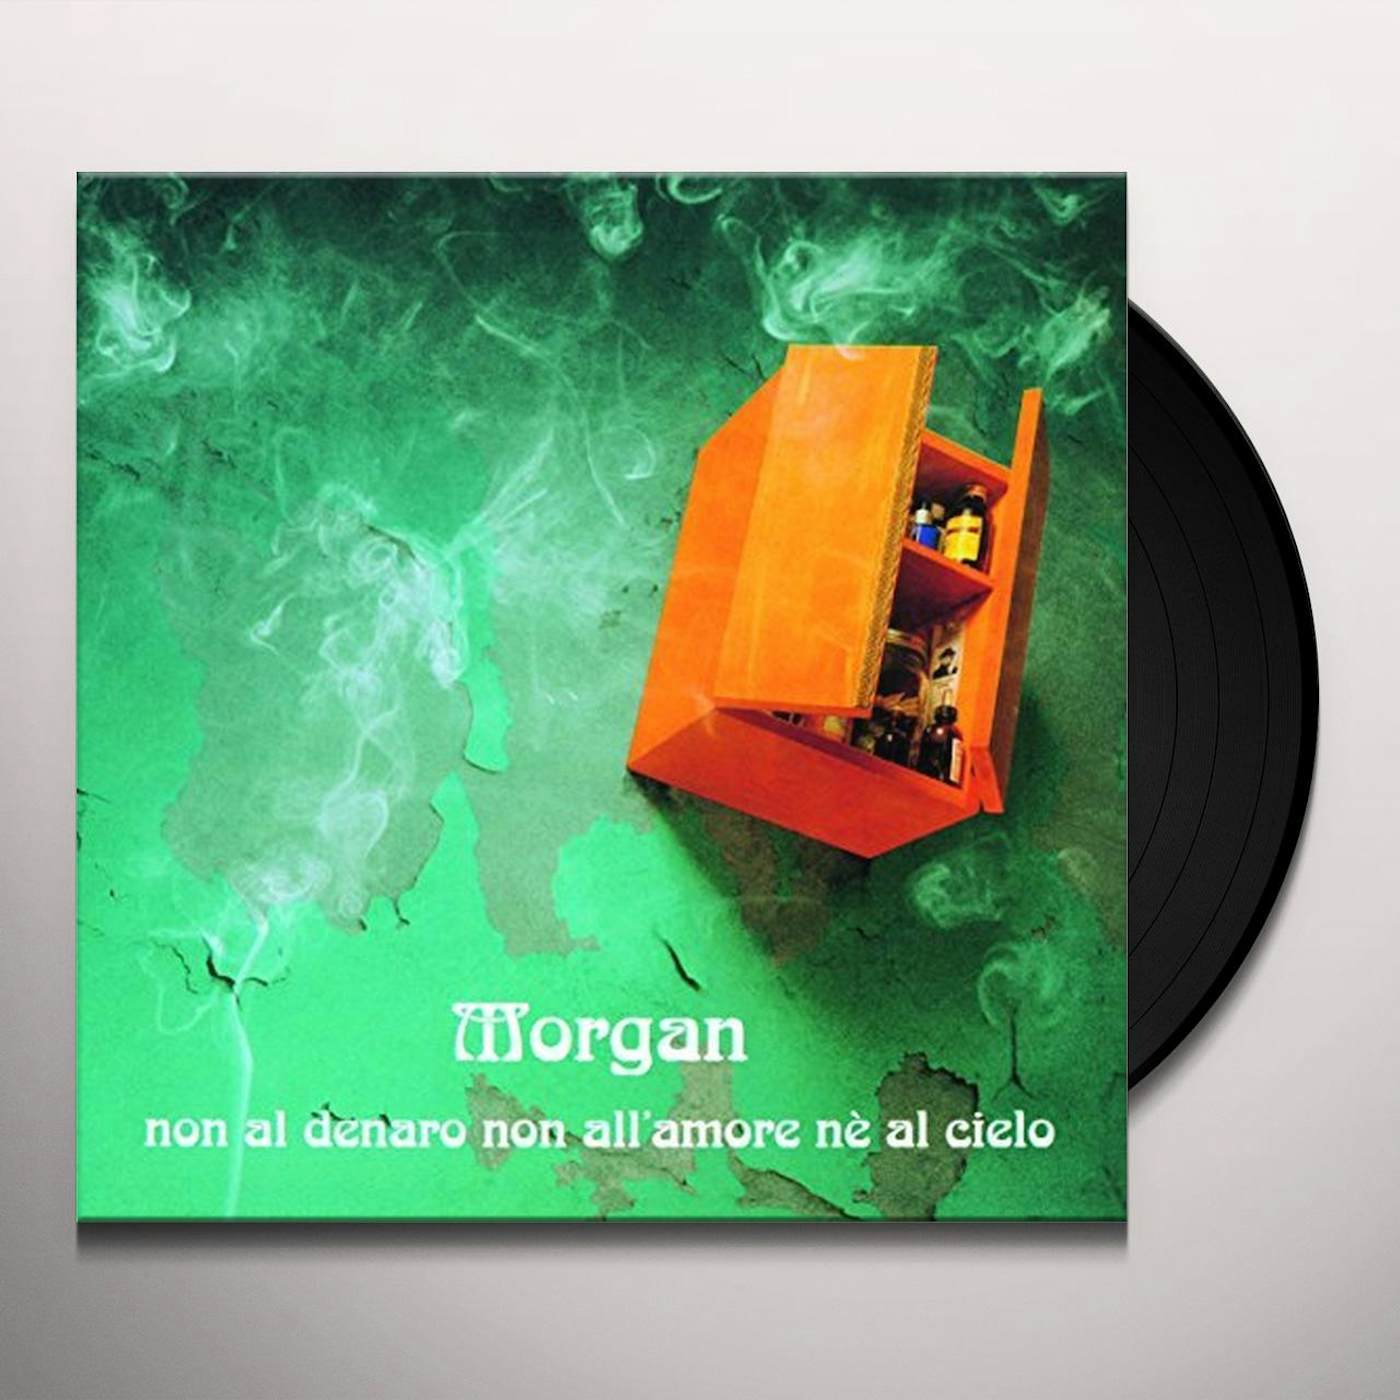 CD - Canzoni dell'appartamento, Morgan